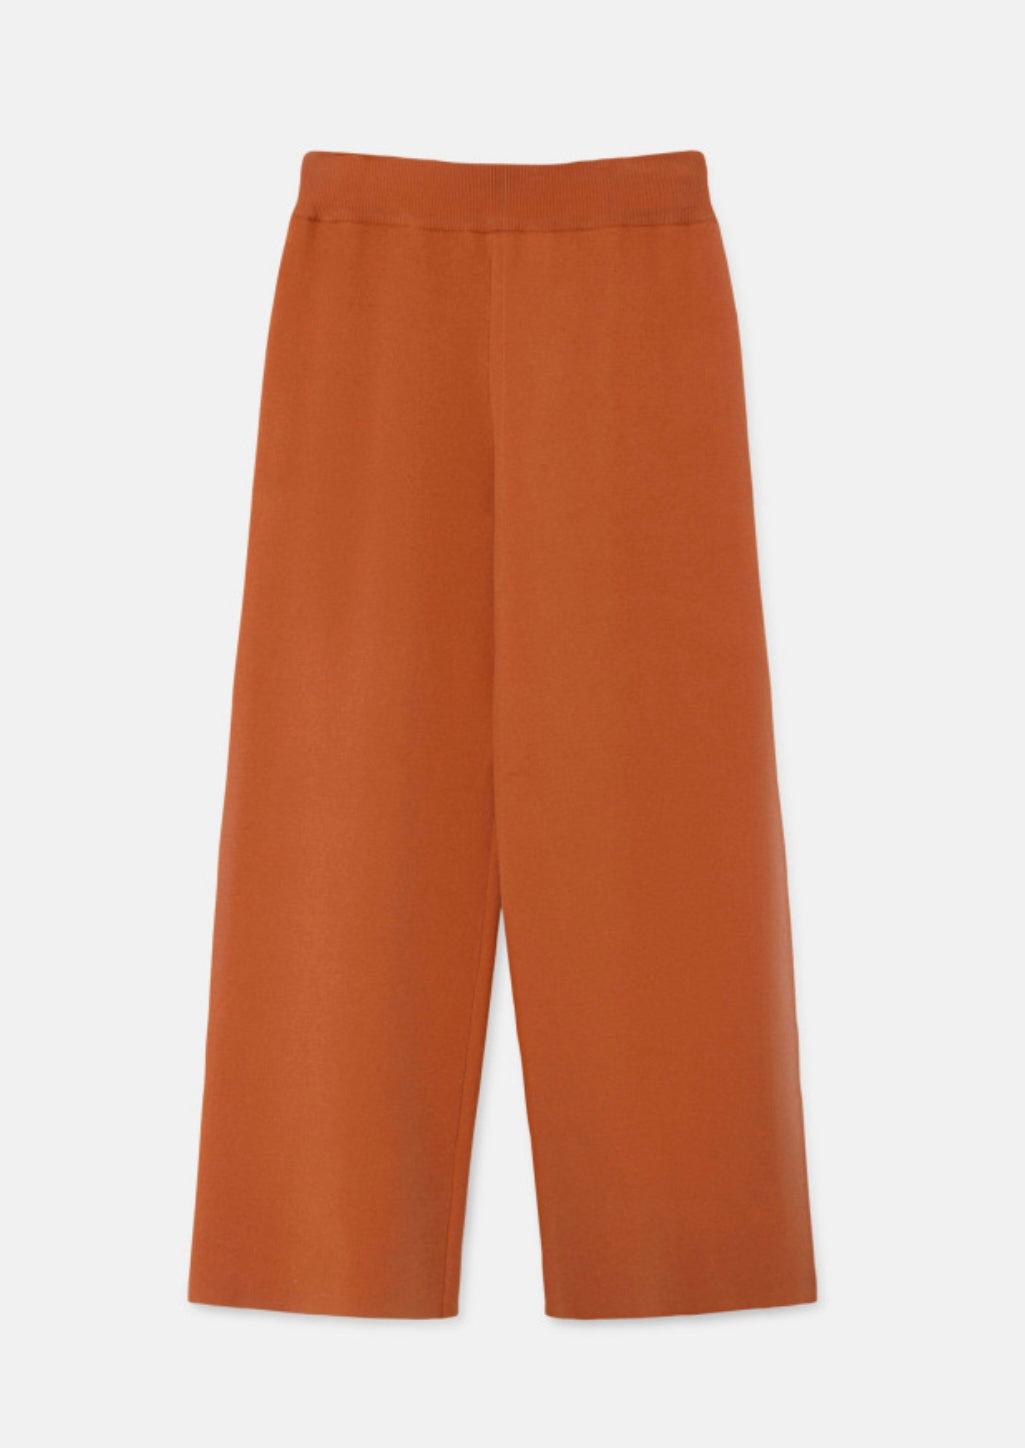 Orange Knit Pants